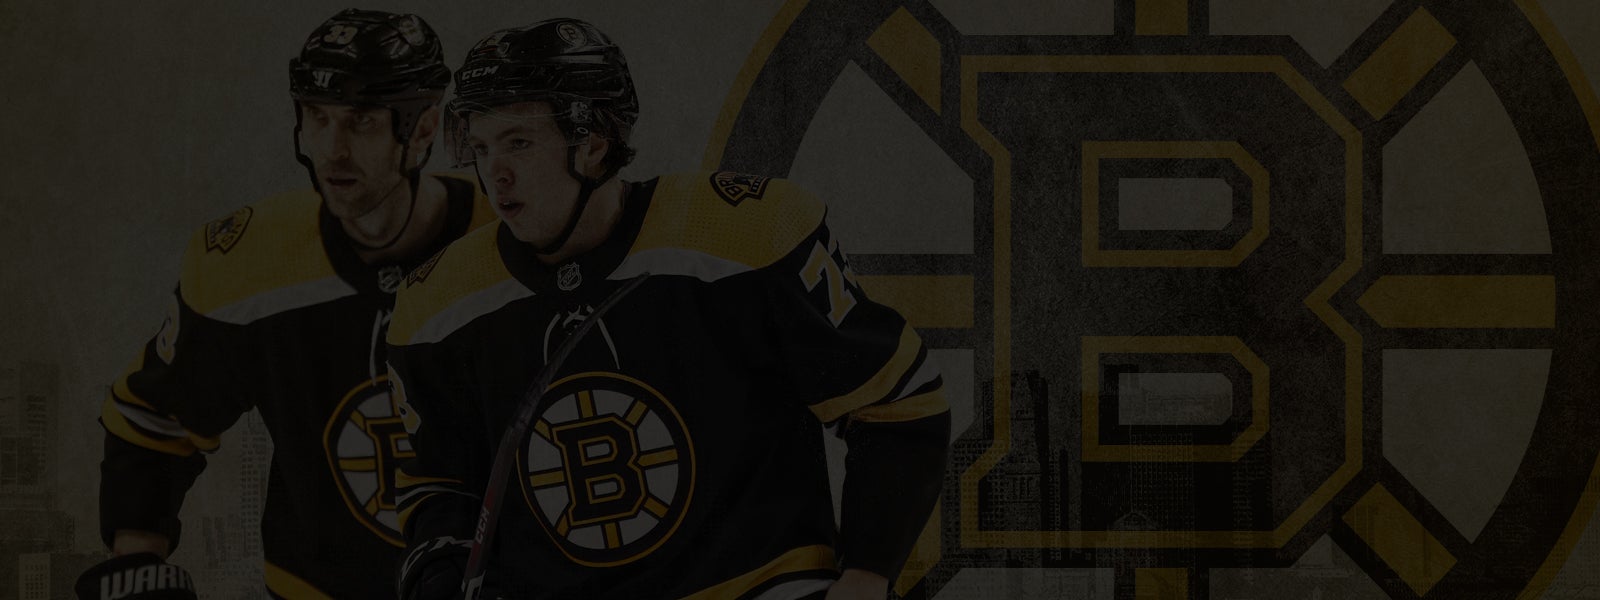  Bruins vs. Senators  - Canceled